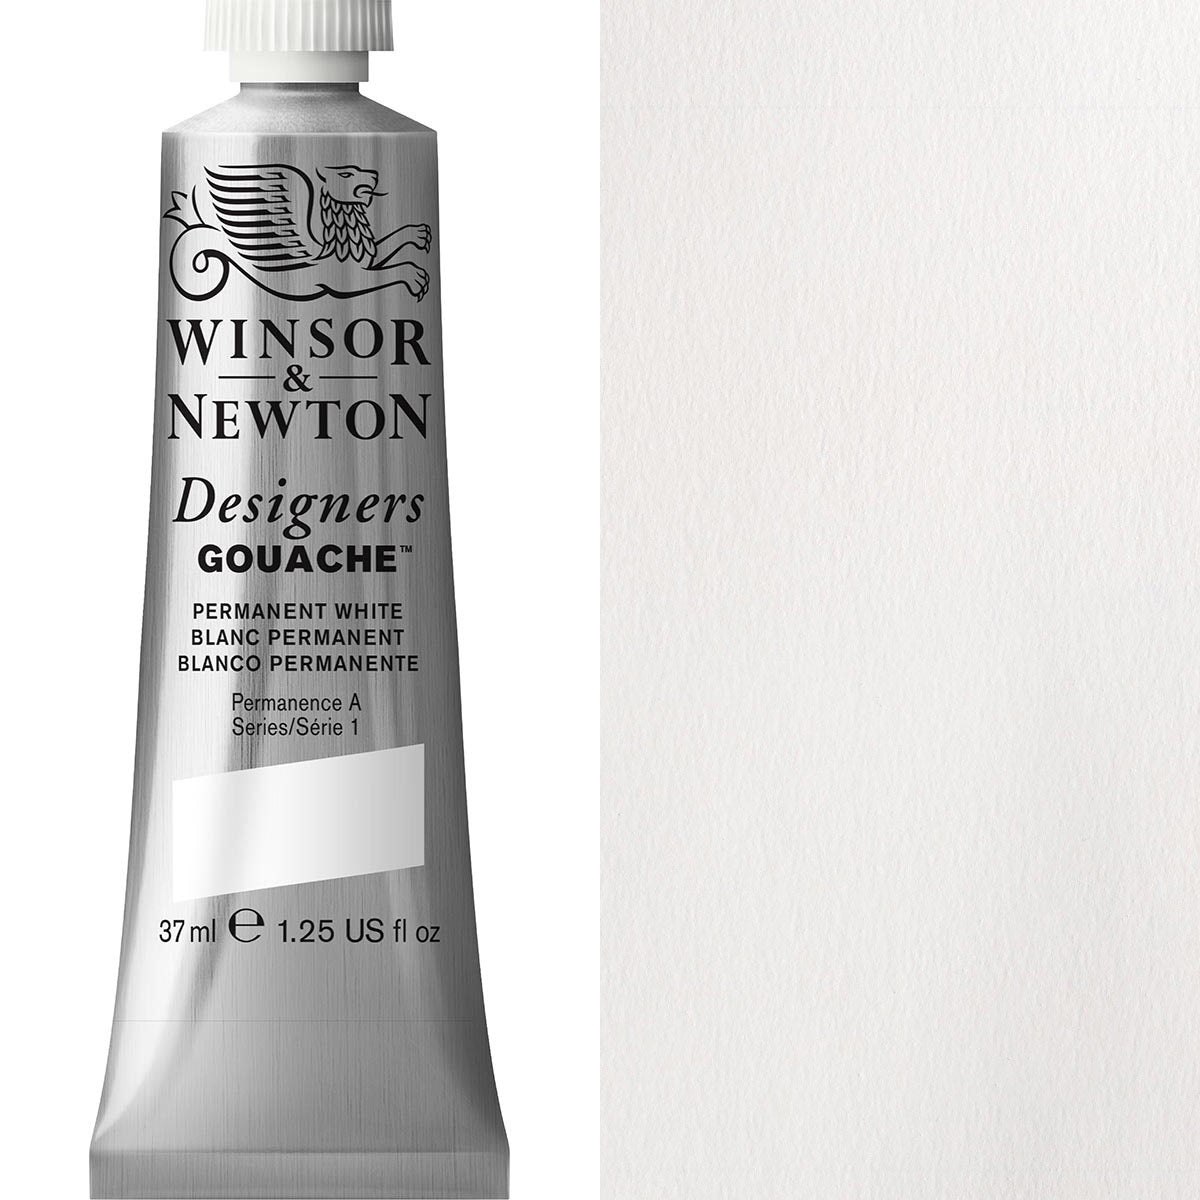 Winsor et Newton - Gouache designers - 37 ml - blanc permanent